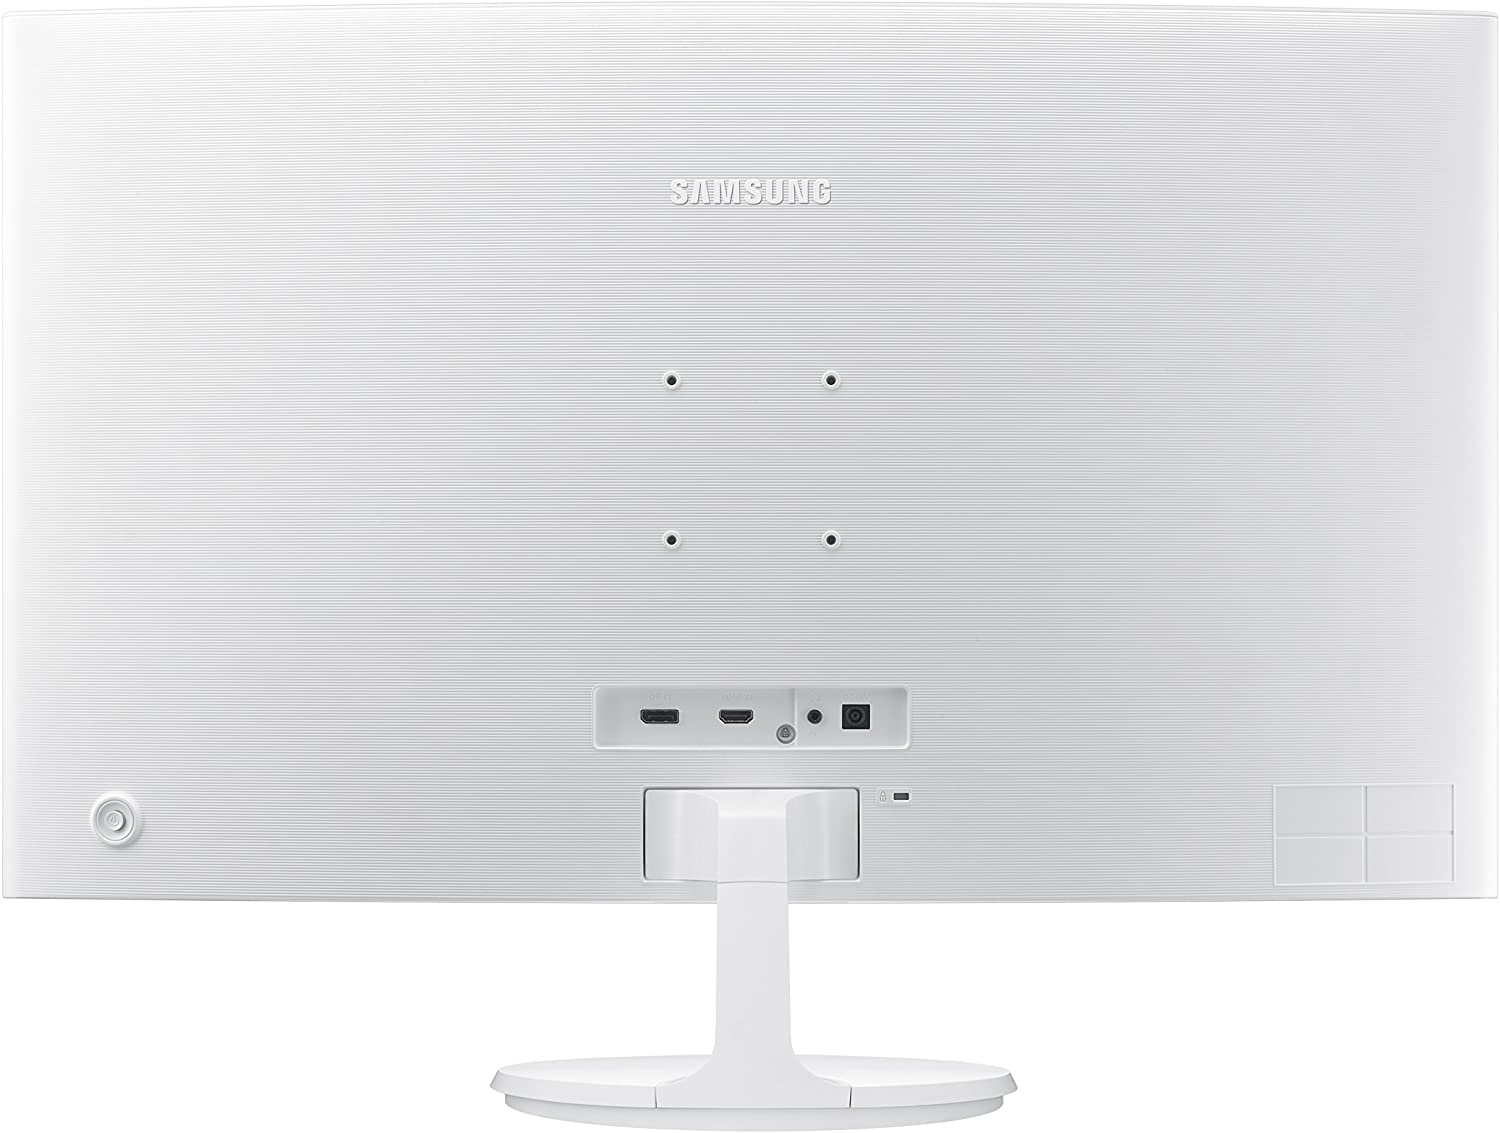 Samsung Lc27F391Fhnxza 27-Inch Curved Monitor (Super Slim Design),White Glossy